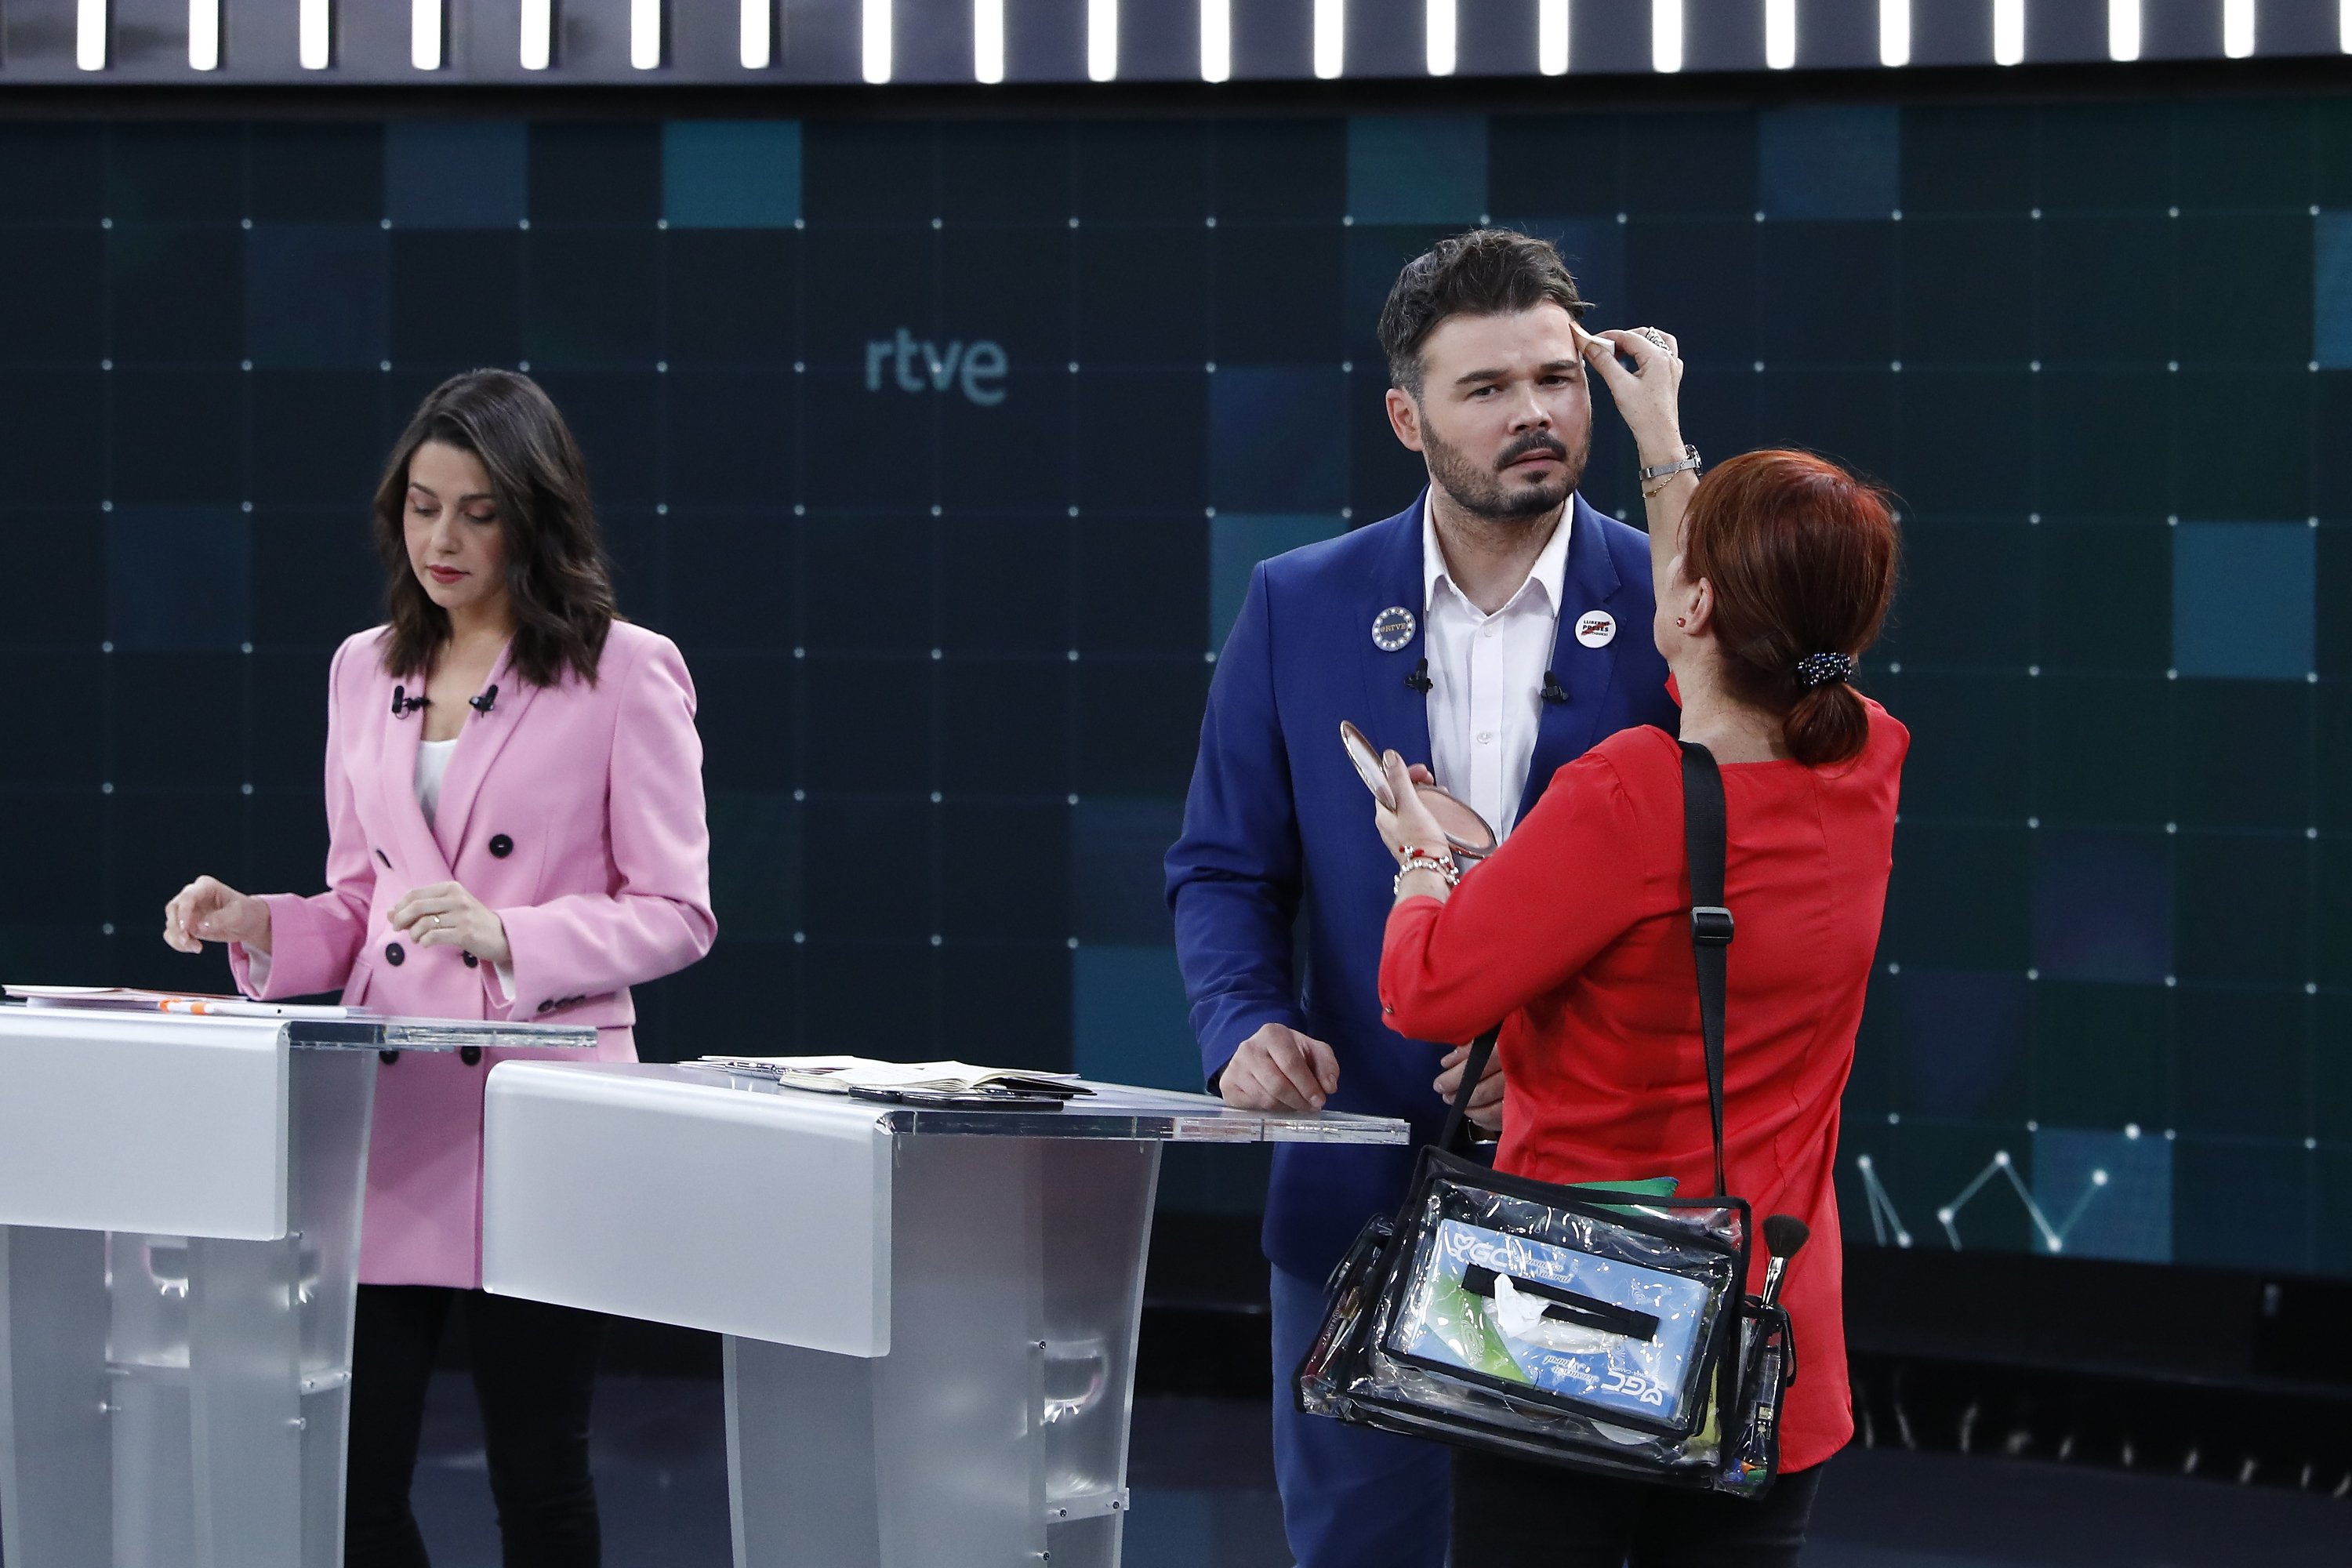 El to d'Arrimadas a Rufián esvalota el debat de TVE: "macarra, poligonera"